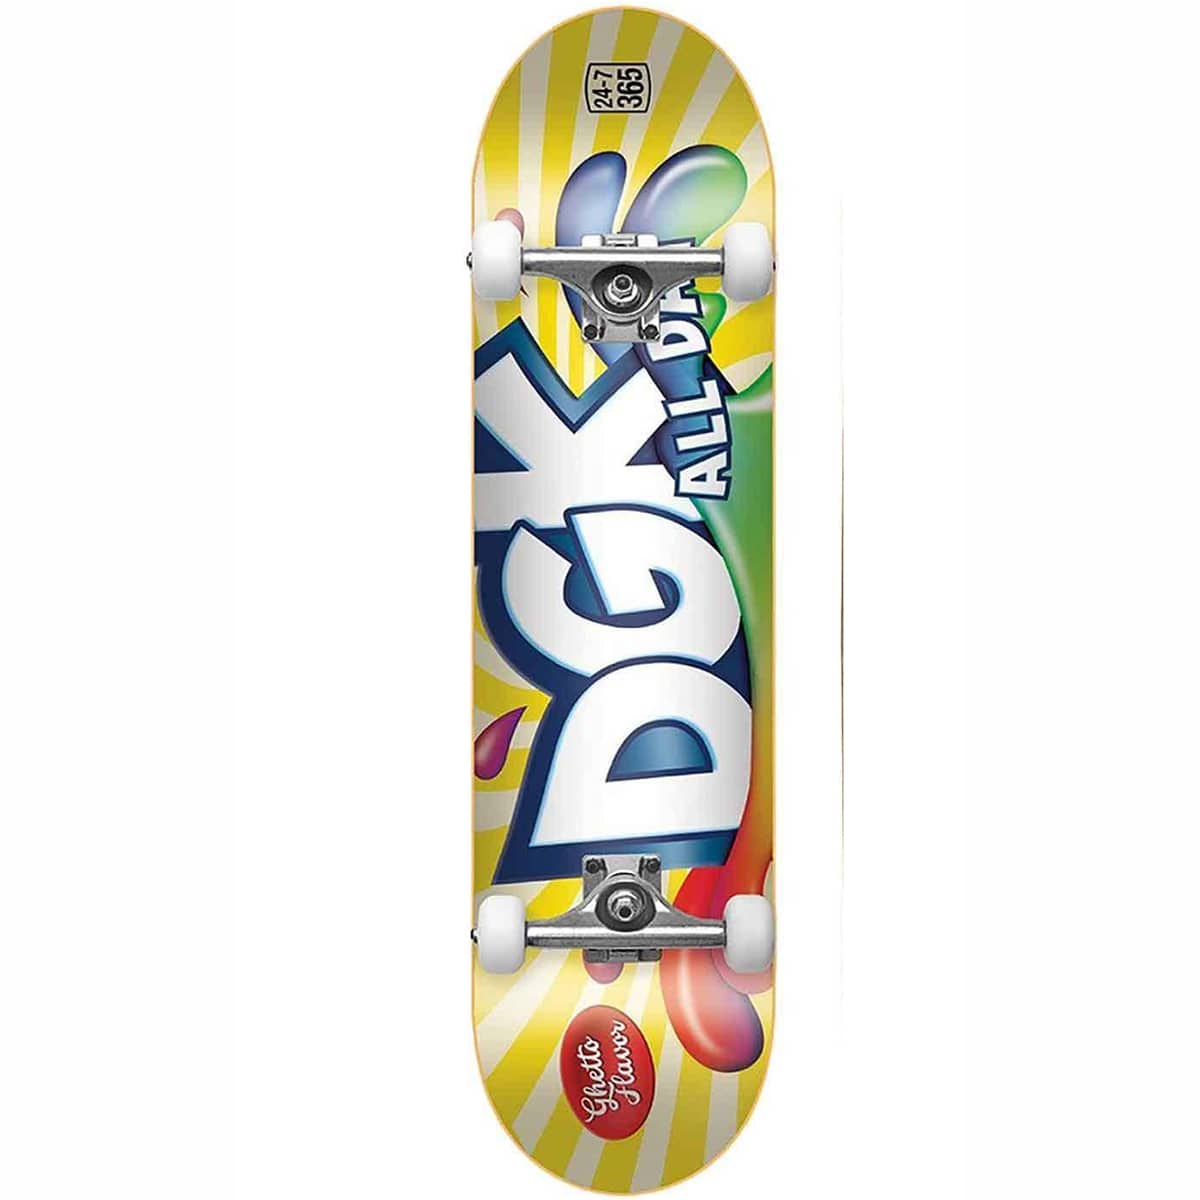 dgk juicy skateboard complet 7 5